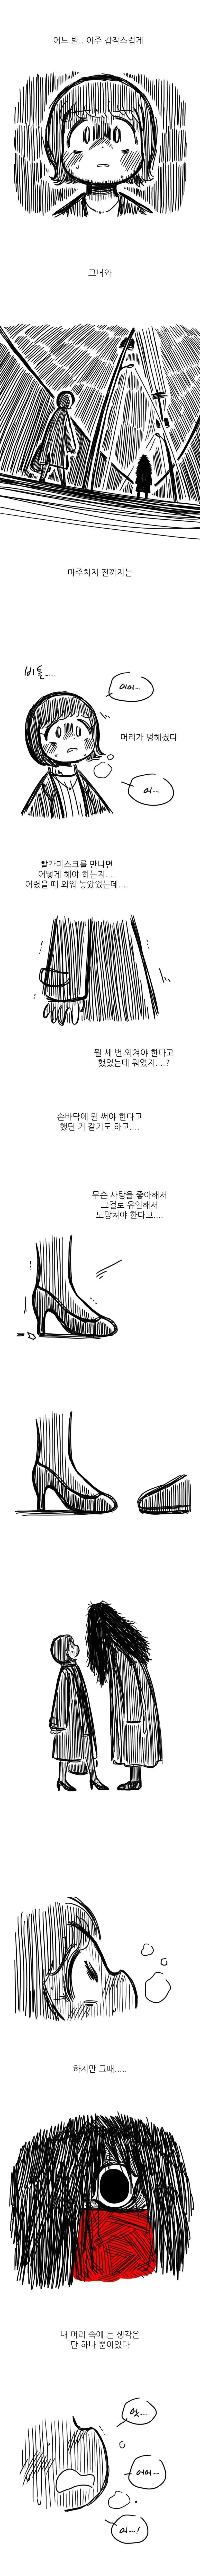 공포의 빨간마스크 만화.jpg | mbong.kr 엠봉